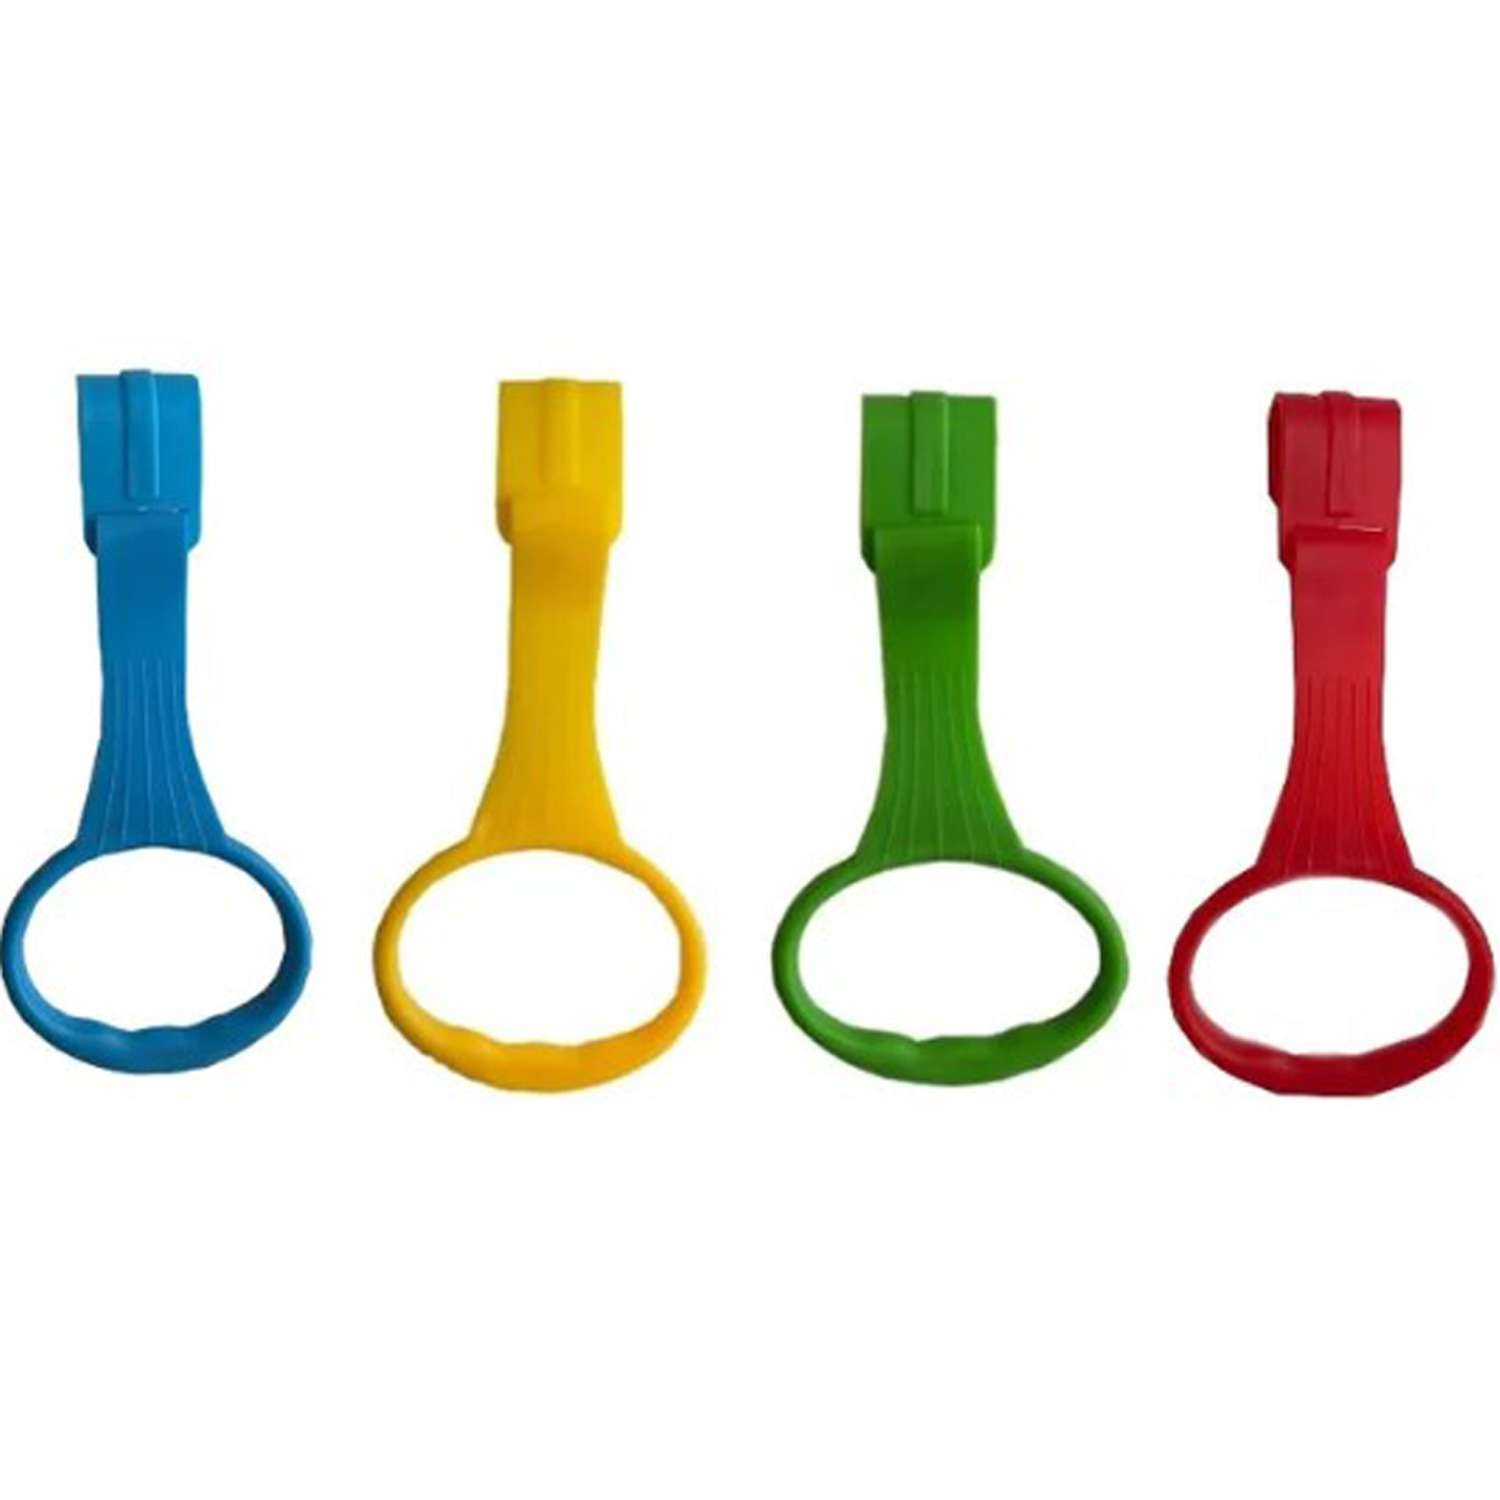 Пластиковые кольца Floopsi для манежа или барьера подвесные 2 шт kolso-4pc-blue+green+red+yellow - фото 2